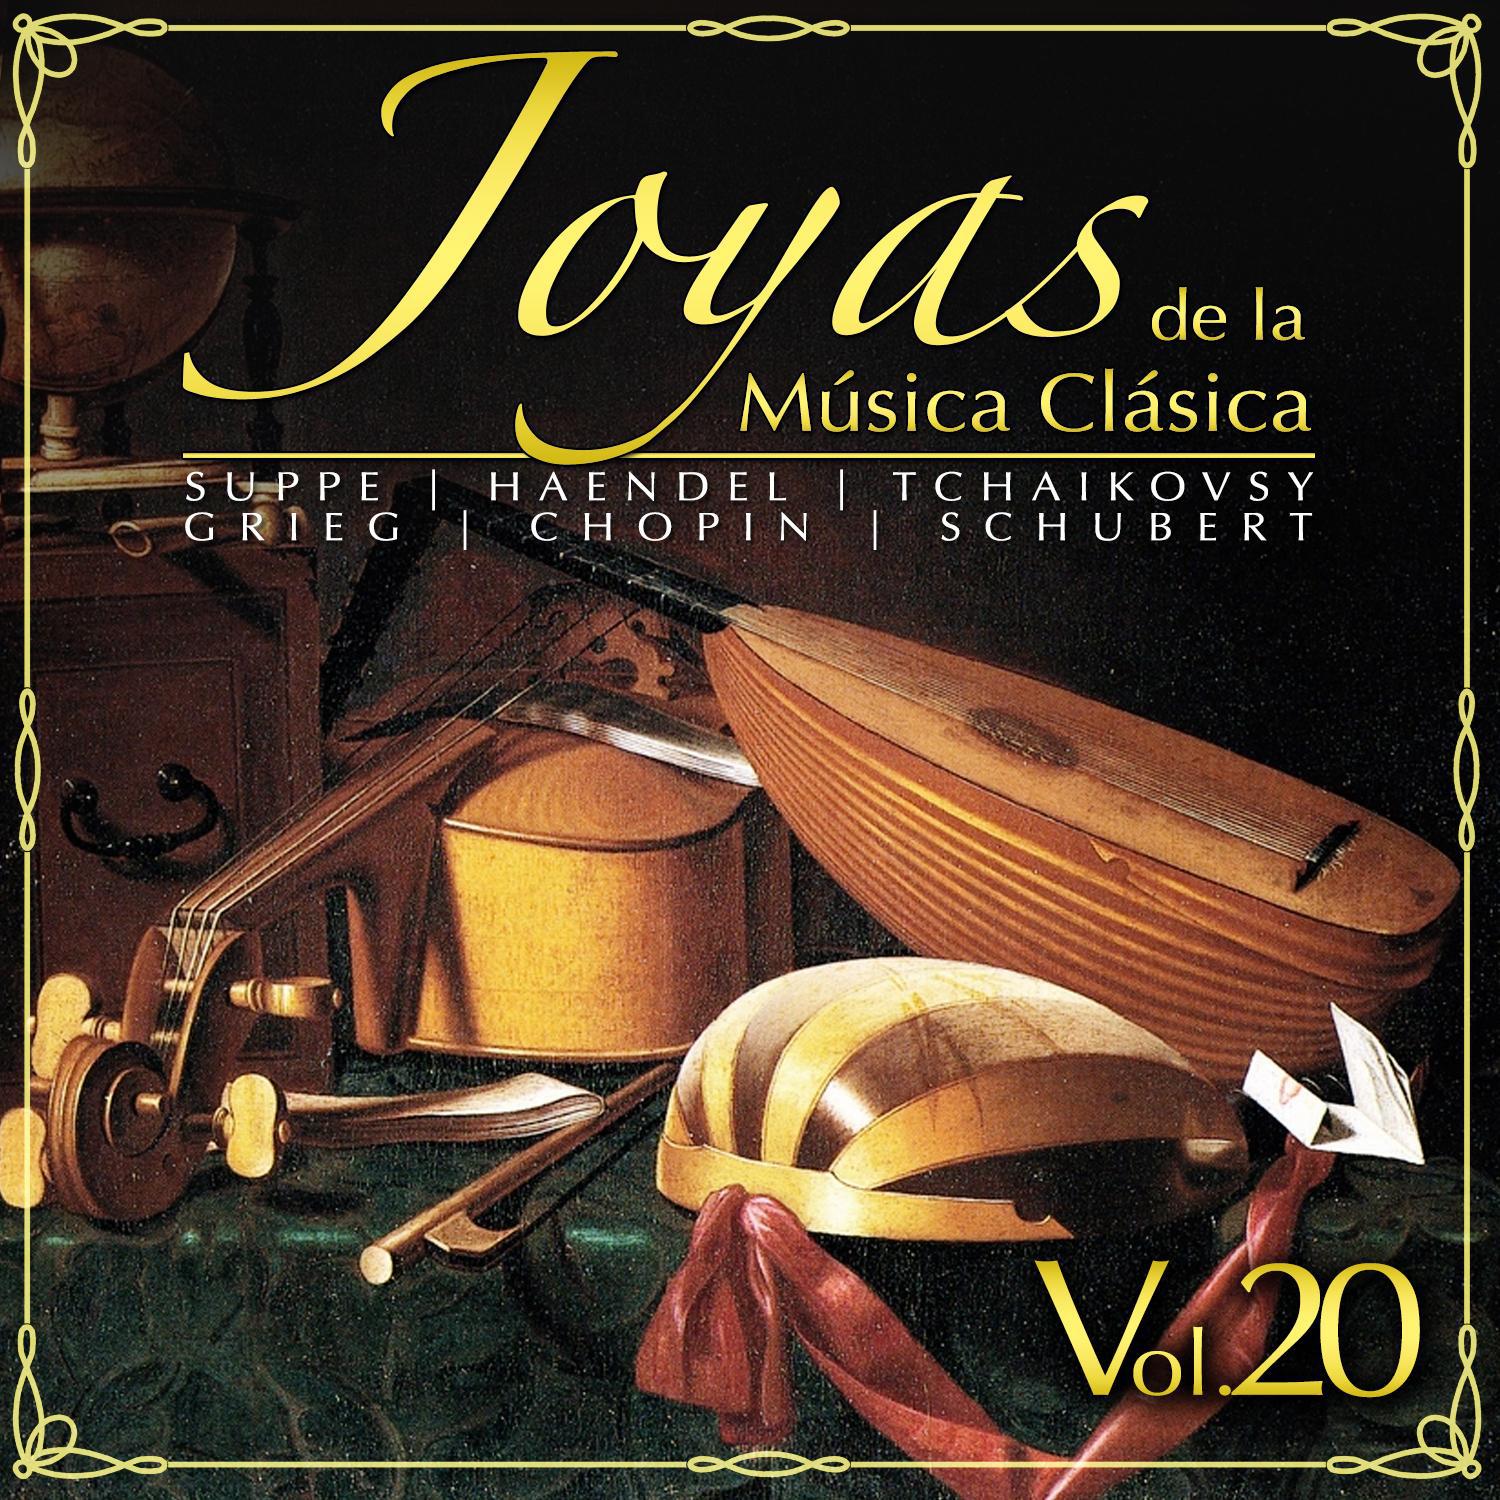 Joyas de la Mu sica Cla sica Vol. 20